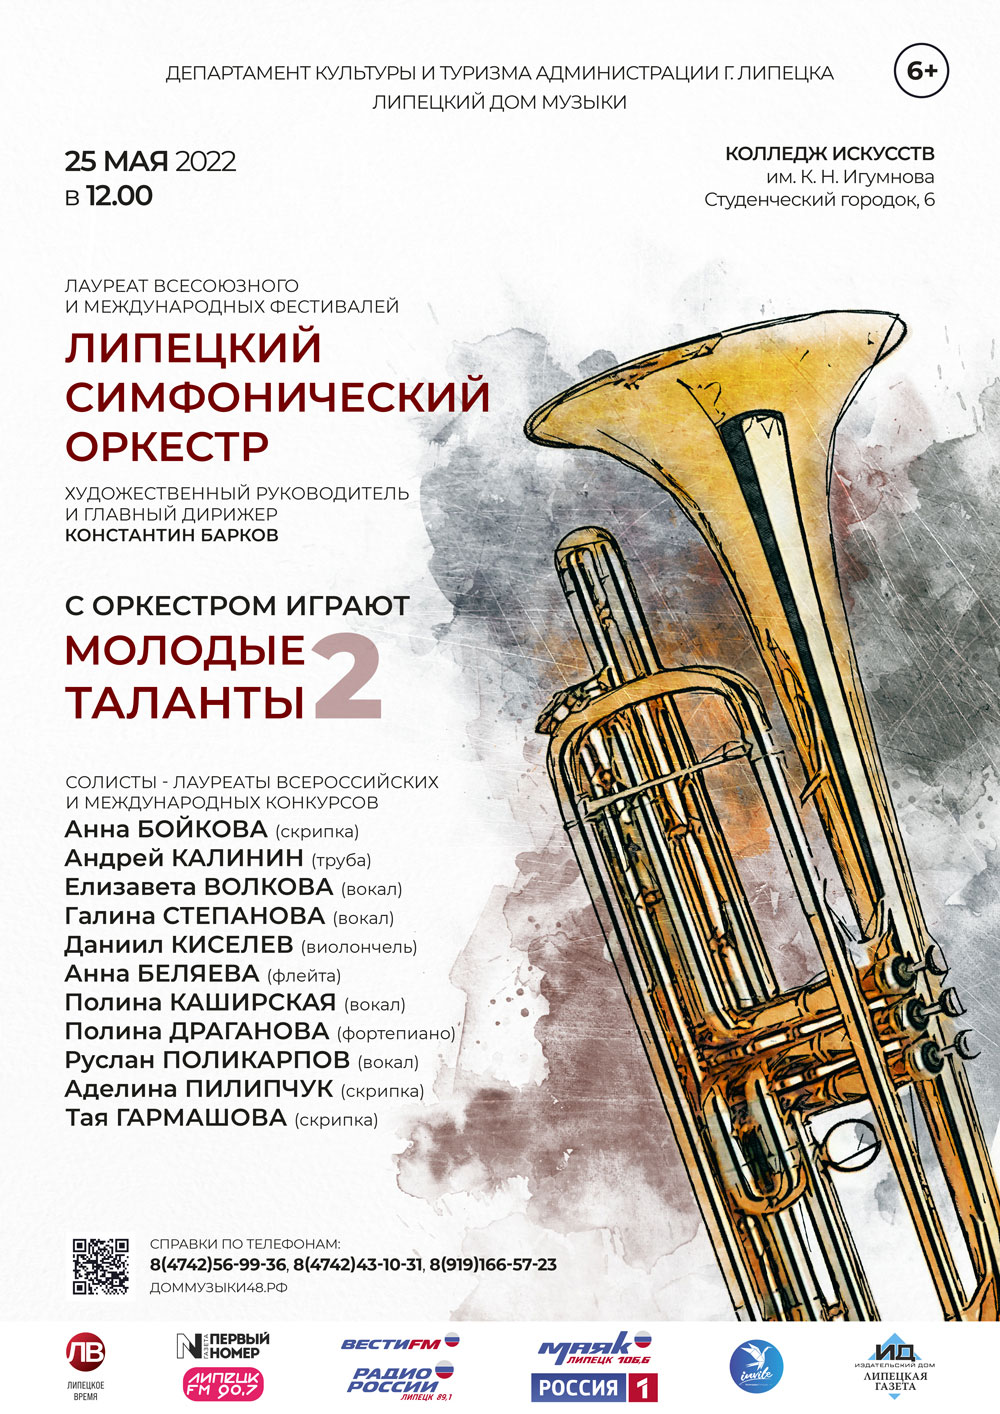 С оркестром играют молодые таланты 2 (25.05.2022 в 12:00)